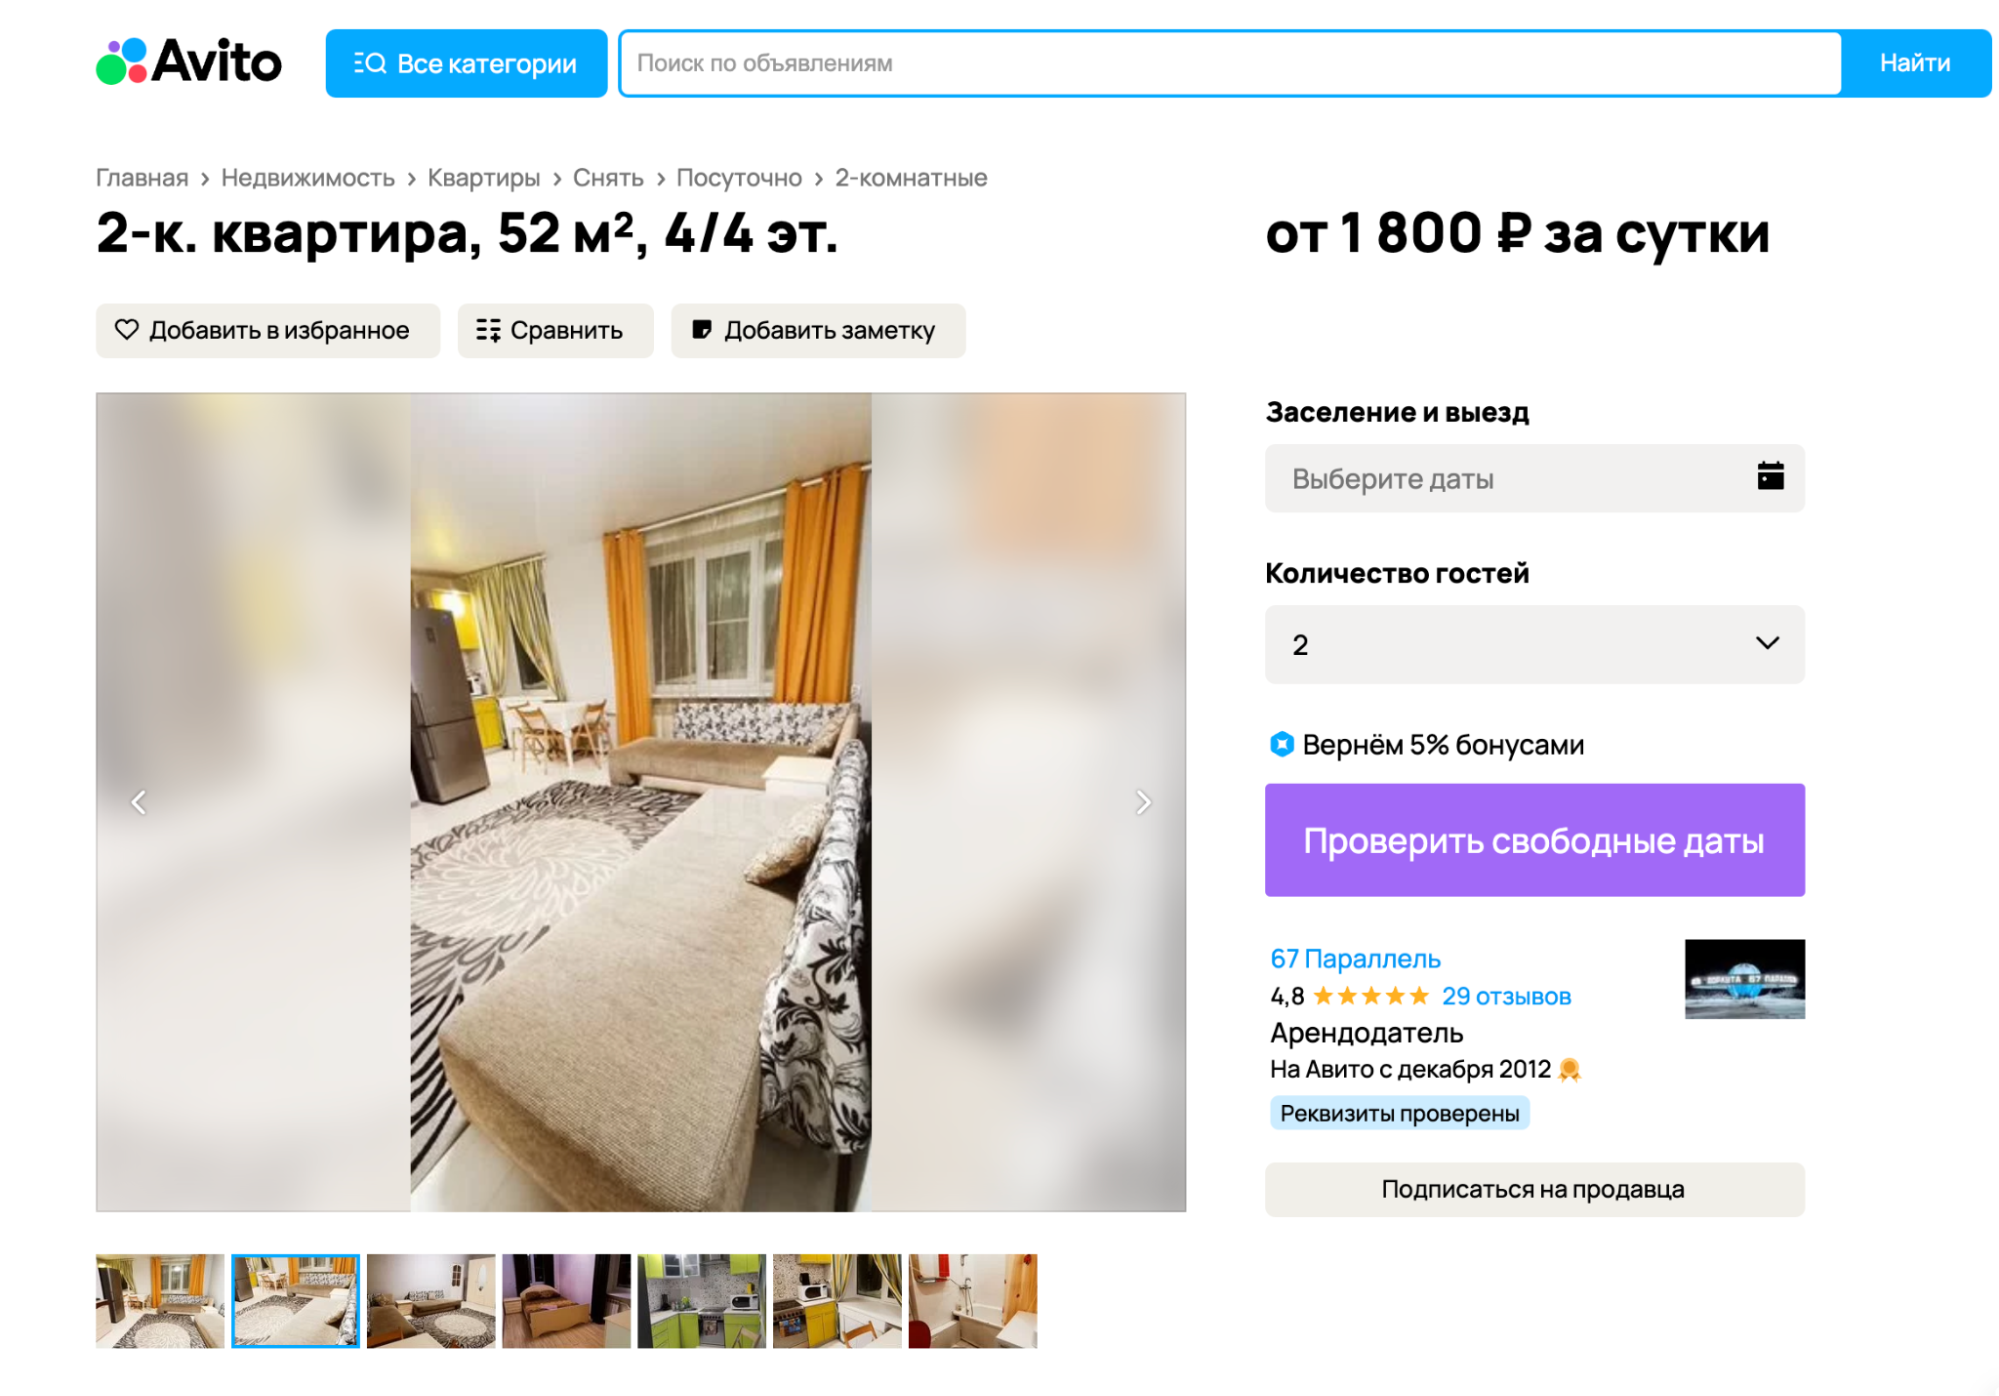 Симпатичную квартиру в центре можно снять за 1800 ₽ в сутки. Источник: avito.ru